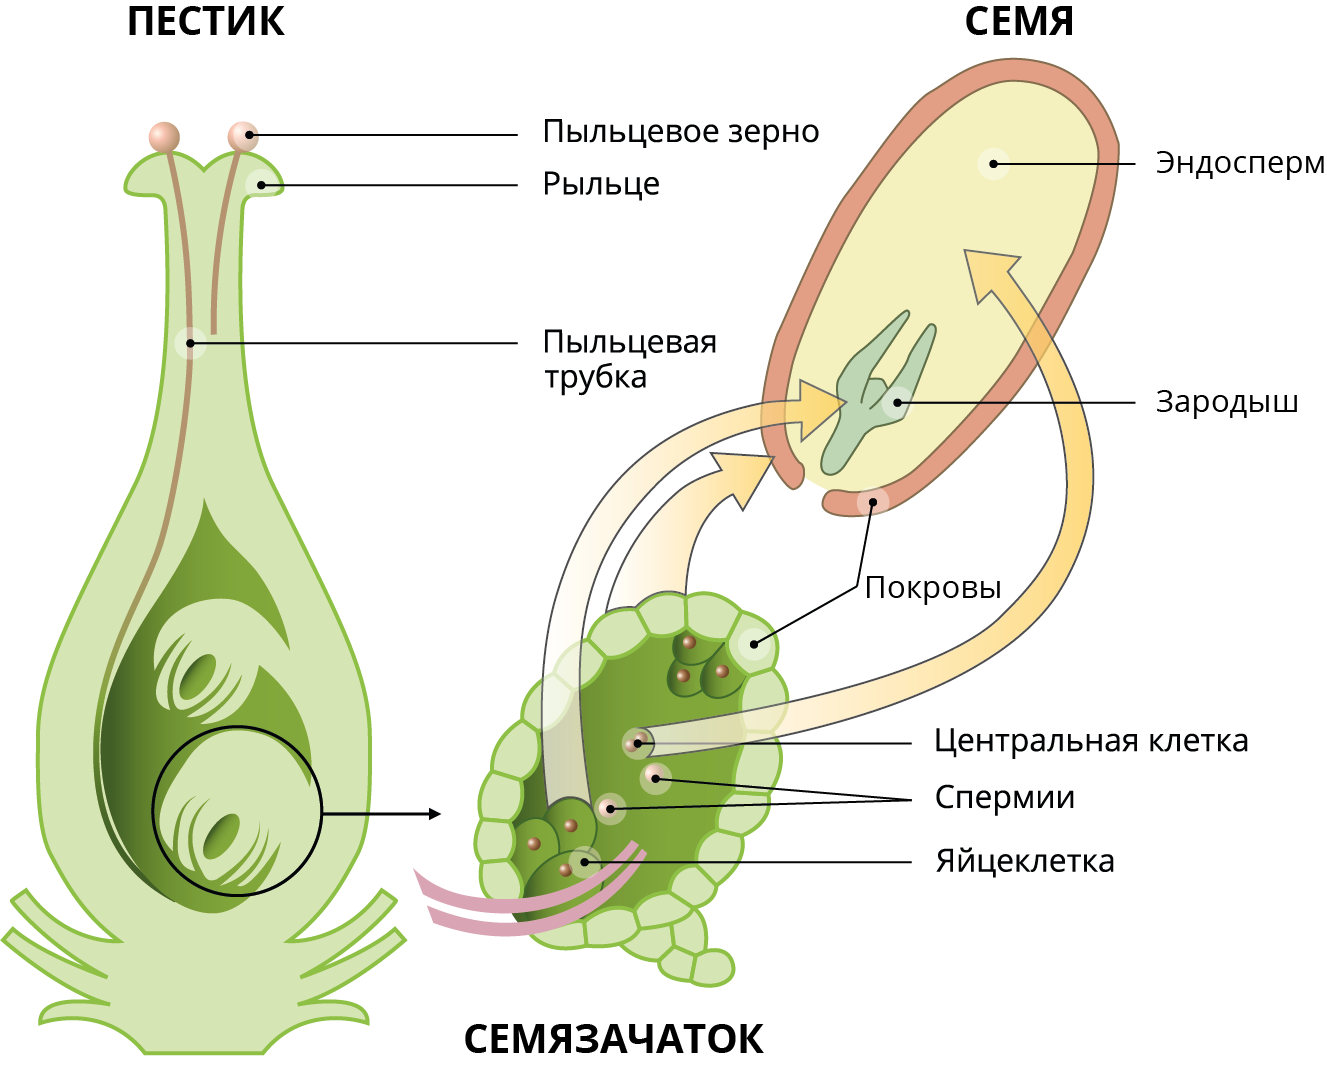 Как называют данный процесс пыльцевая трубка спермии. Оплодотворение покрытосеменных растений схема. Схема двойного оплодотворения у покрытосеменных растений. Схема двойного оплодотворения цветкового растения. Схема двойного оплодотворения цветка.